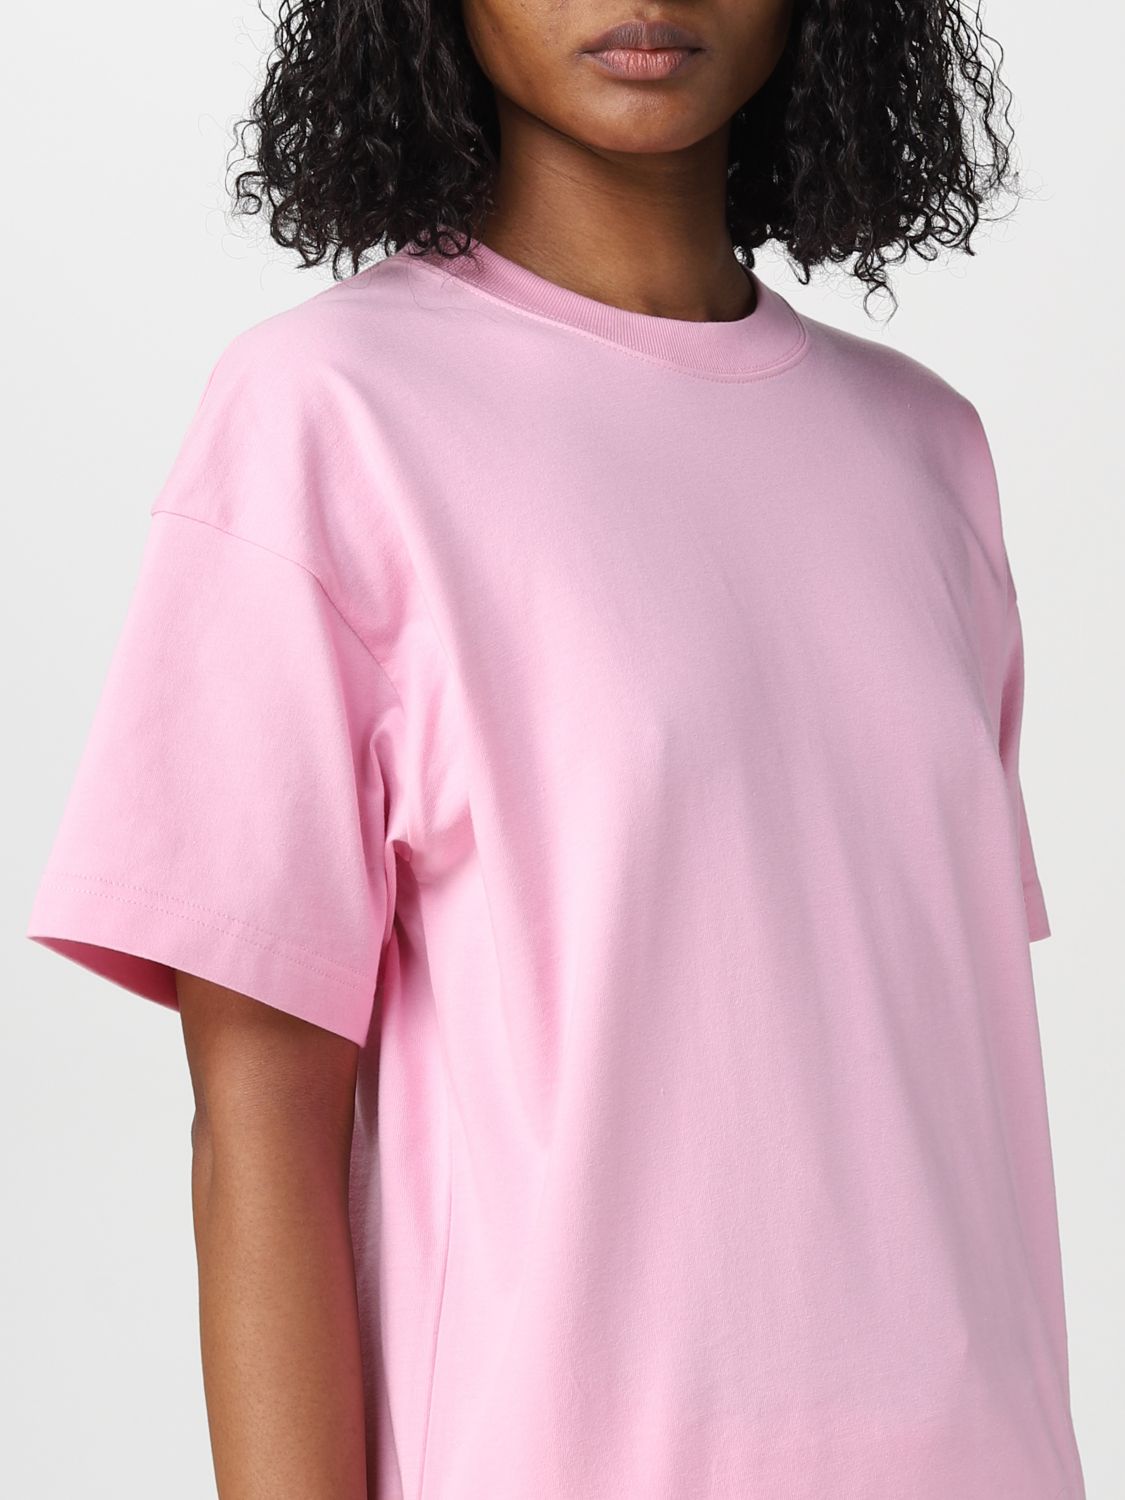 Beskæftiget bifald Våbenstilstand BALENCIAGA: cotton t-shirt - Pink | Balenciaga t-shirt 612965TIVG5 online  on GIGLIO.COM